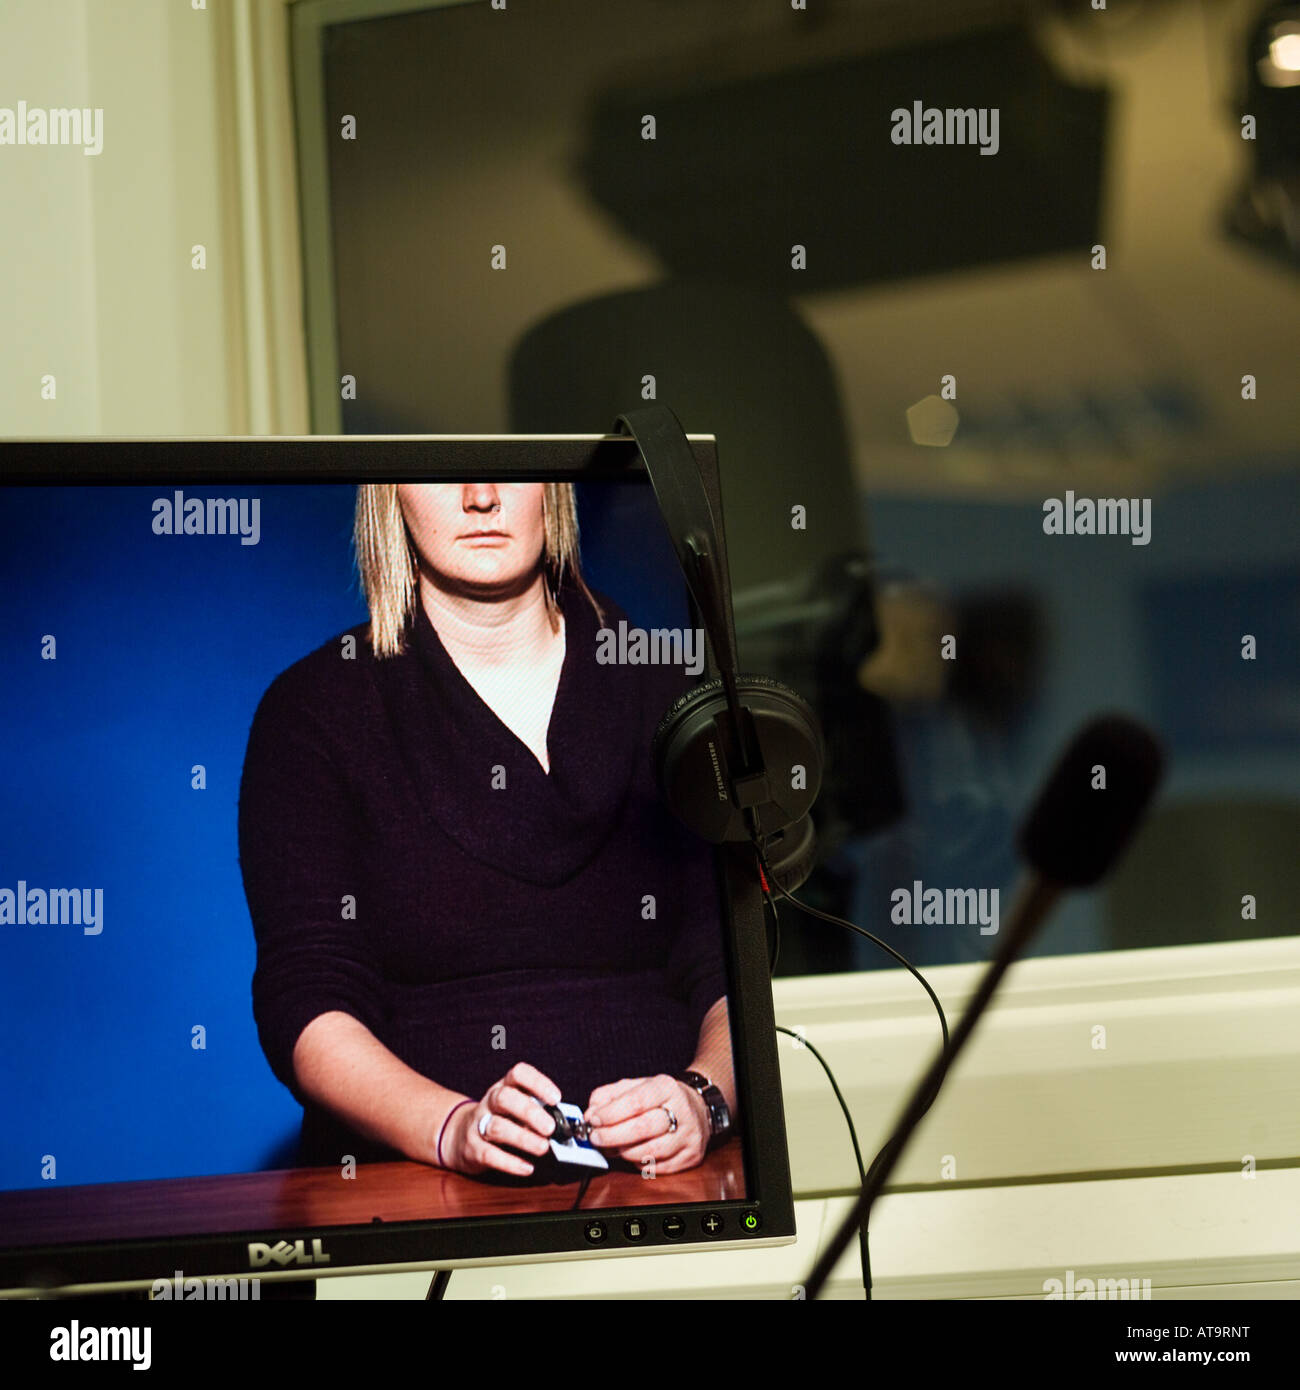 Trasmissione di notizie internet registrazione monitor TV studio riprese in aria Foto Stock